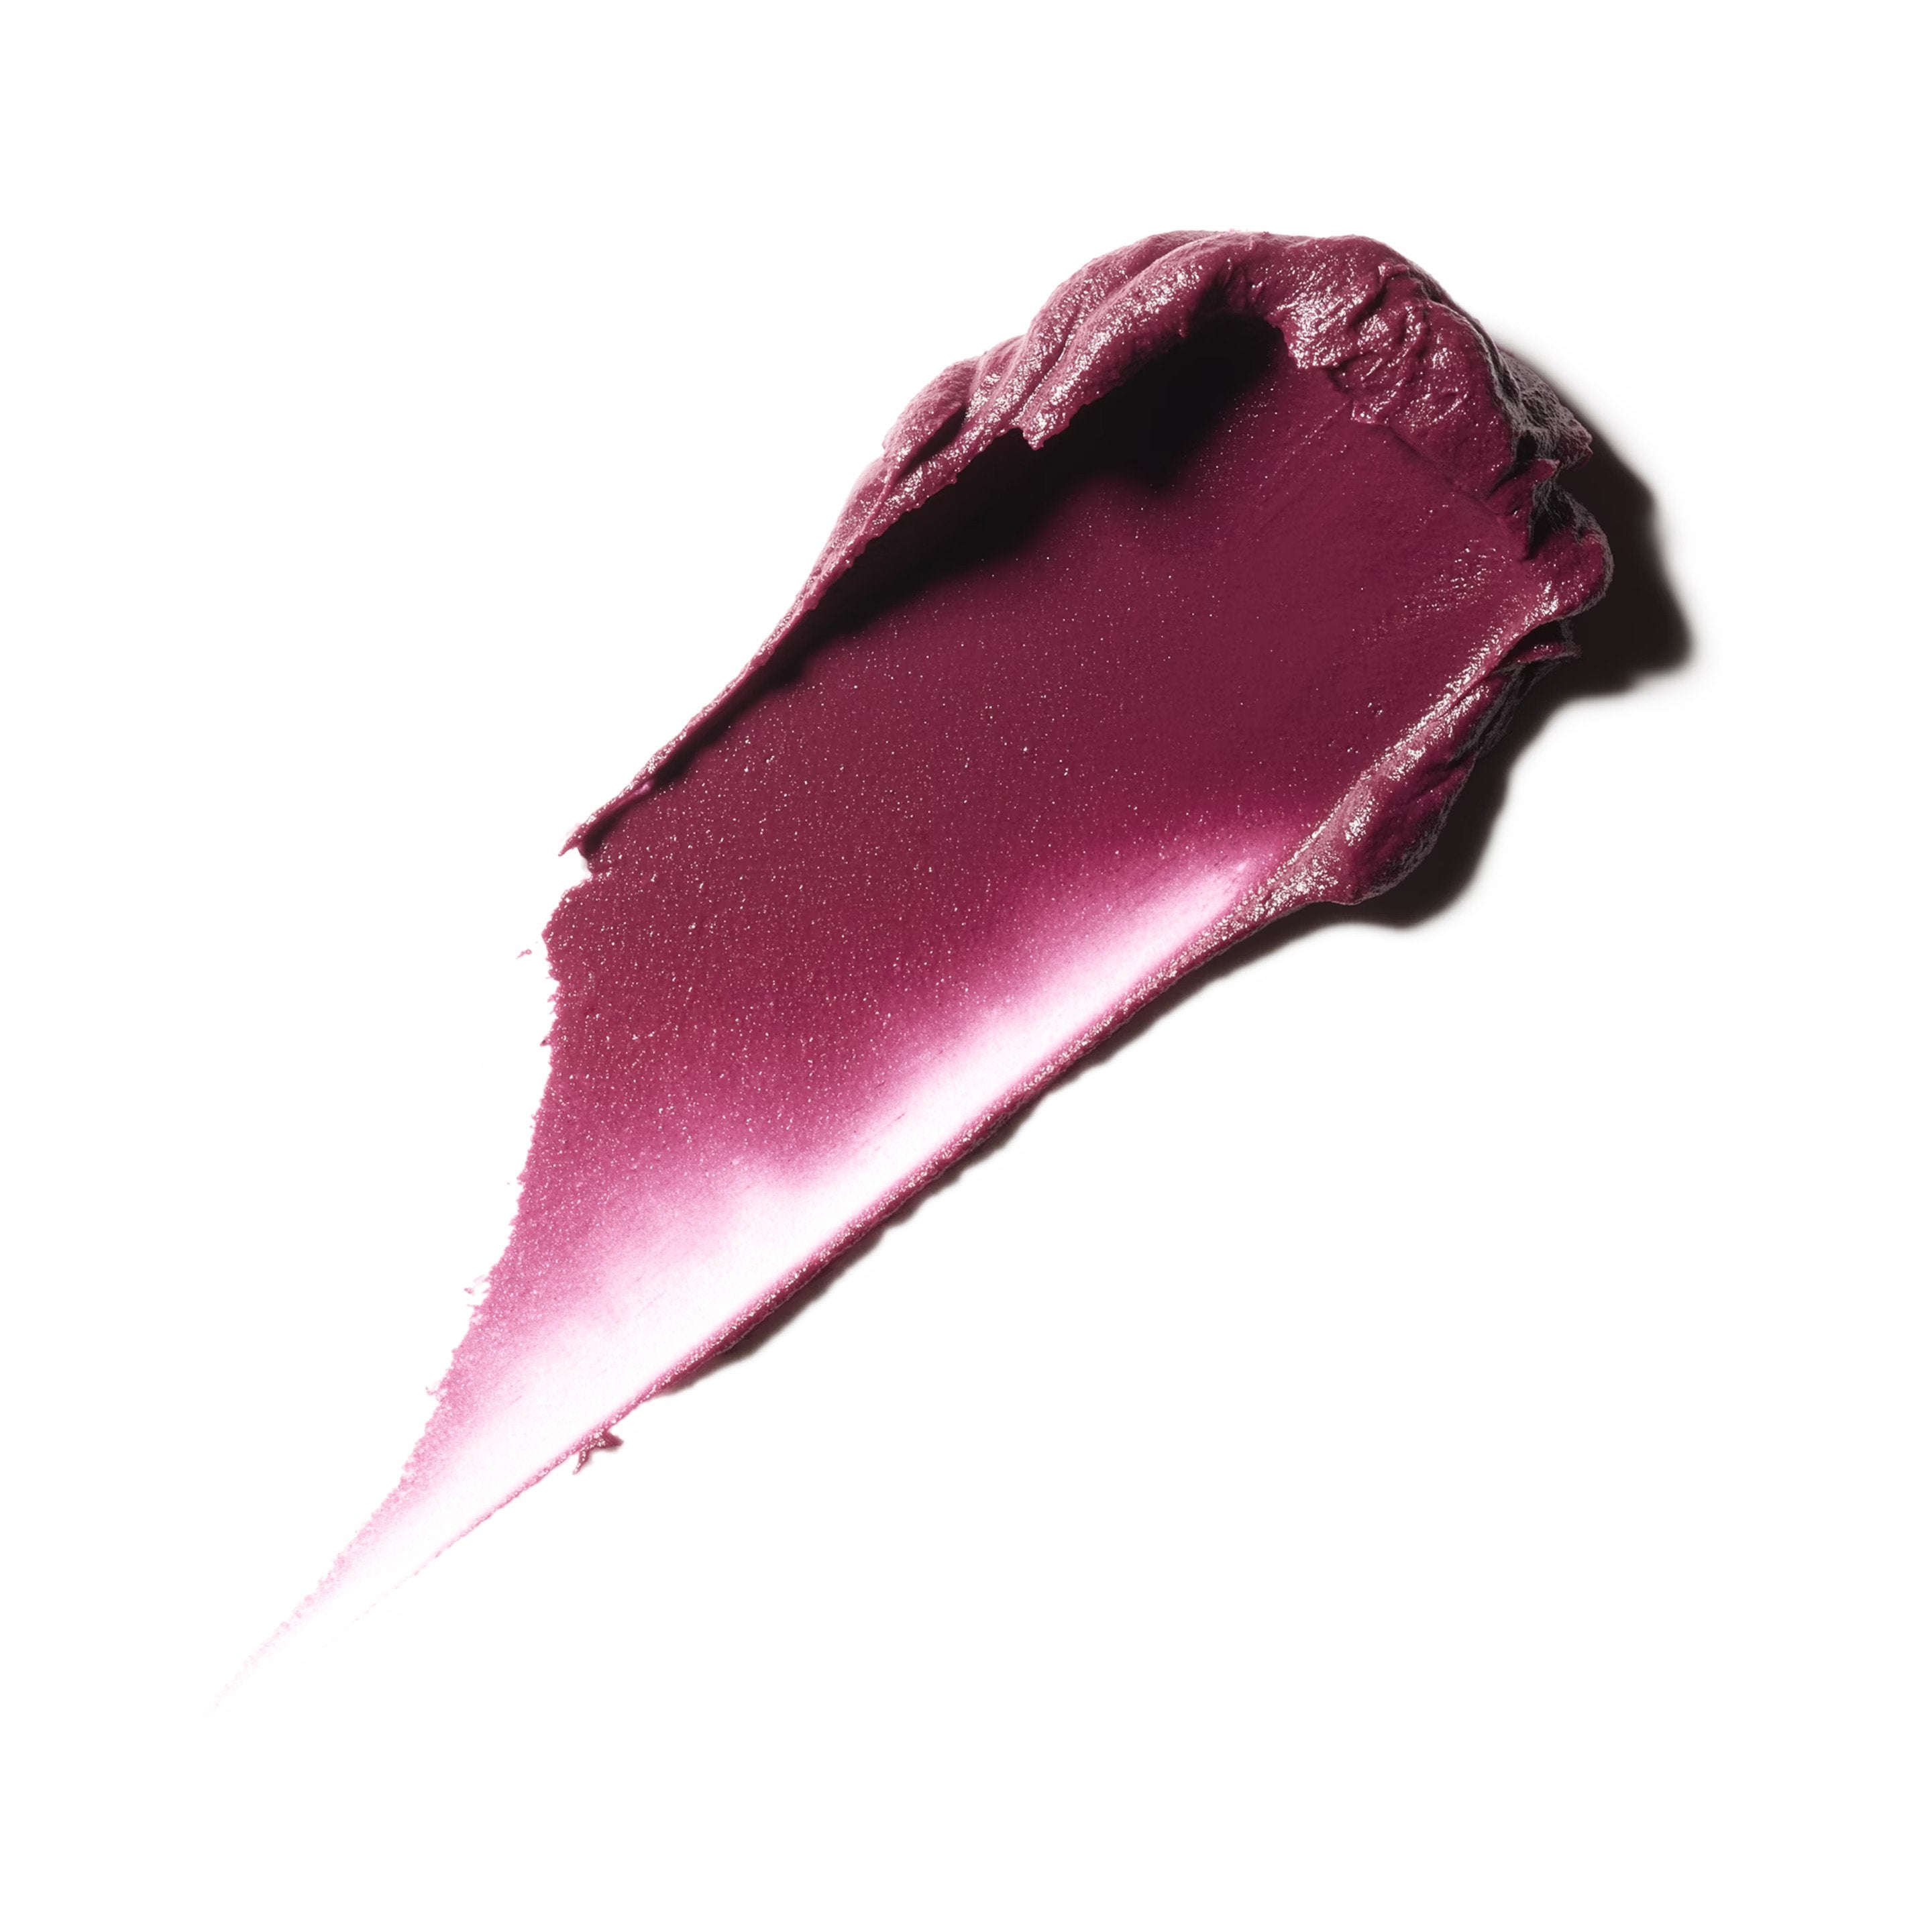 M·A·C Powder Kiss Liquid Lipcolour